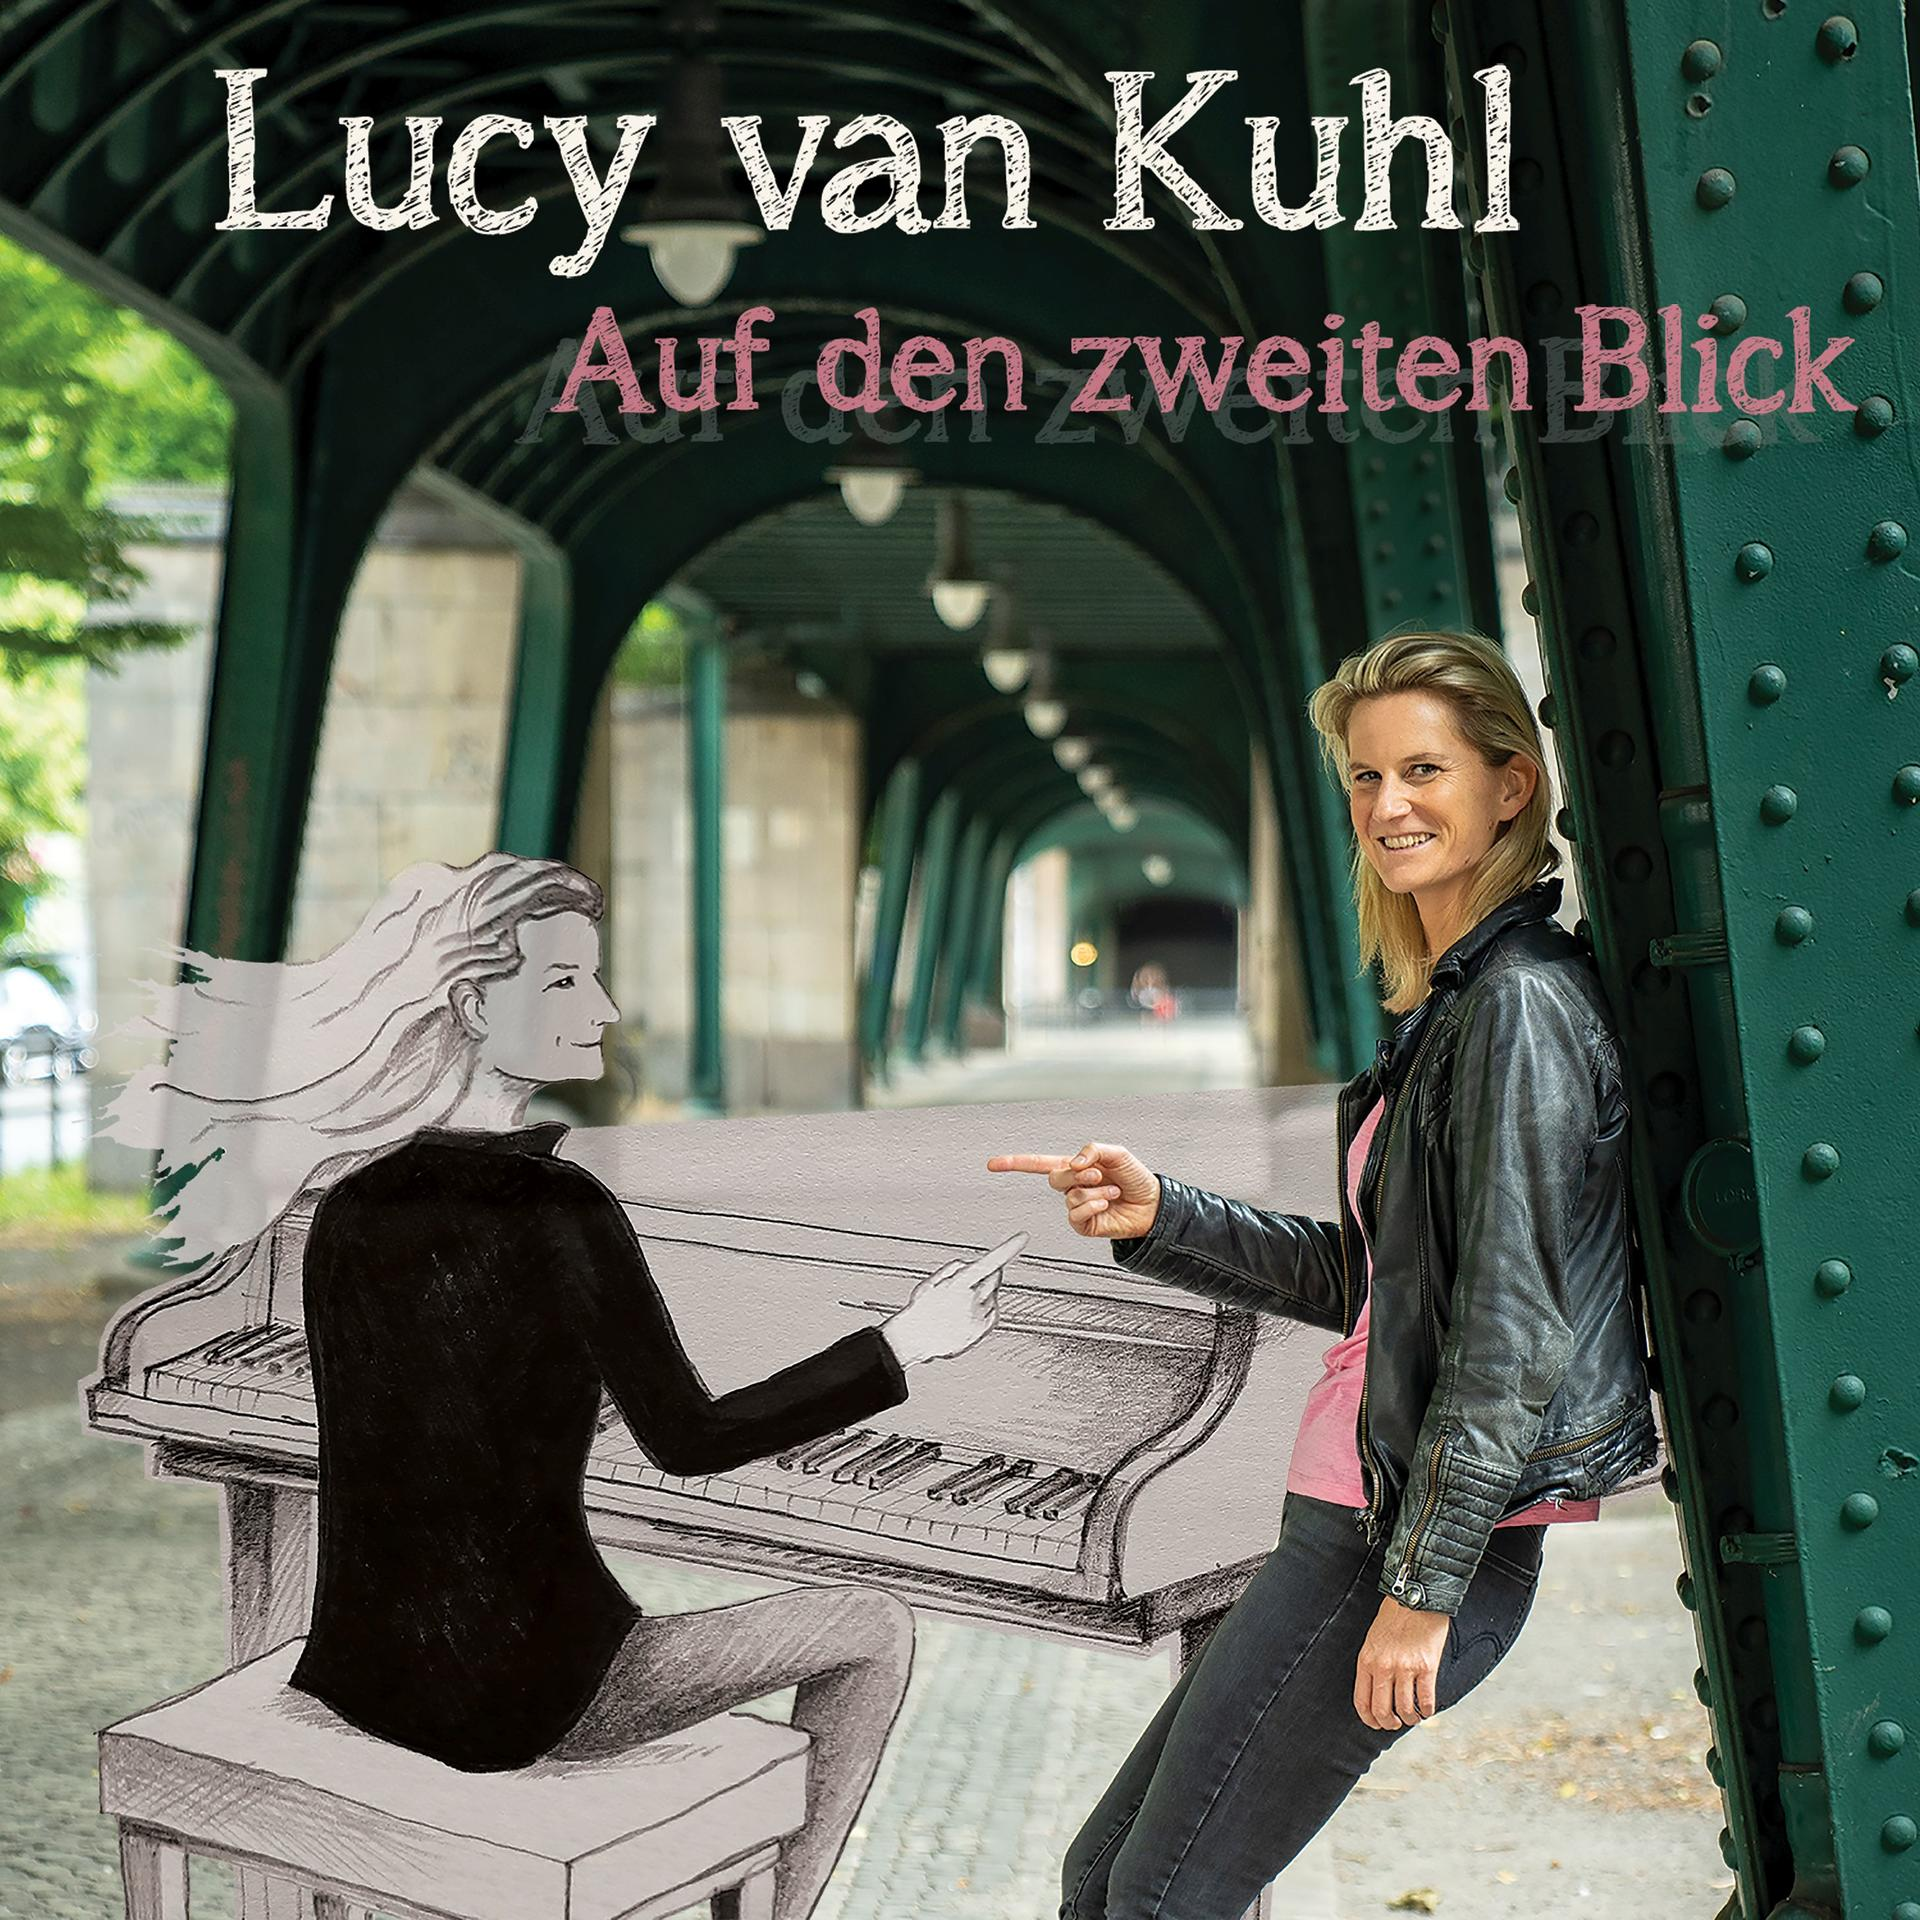 Lucy Van Kuhl - Auf - den zweiten (CD) Blick